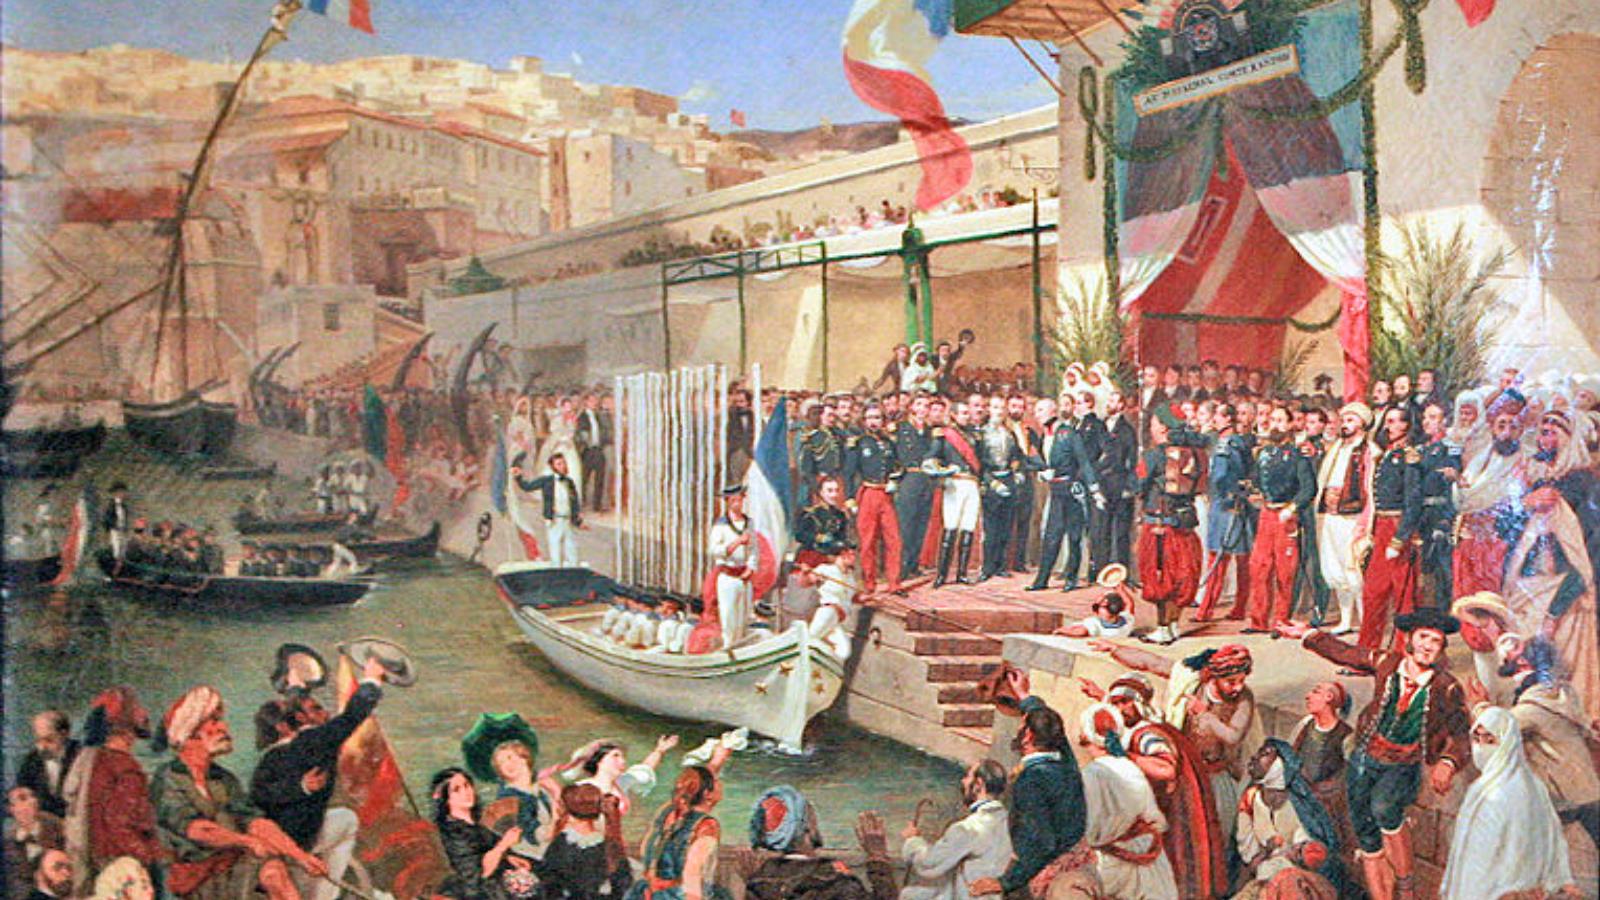  وصول المارشال جاك لوي راندون للجزائر عام 1857 ليصبح حاكما عاما للبلاد(مواقع التواصل)